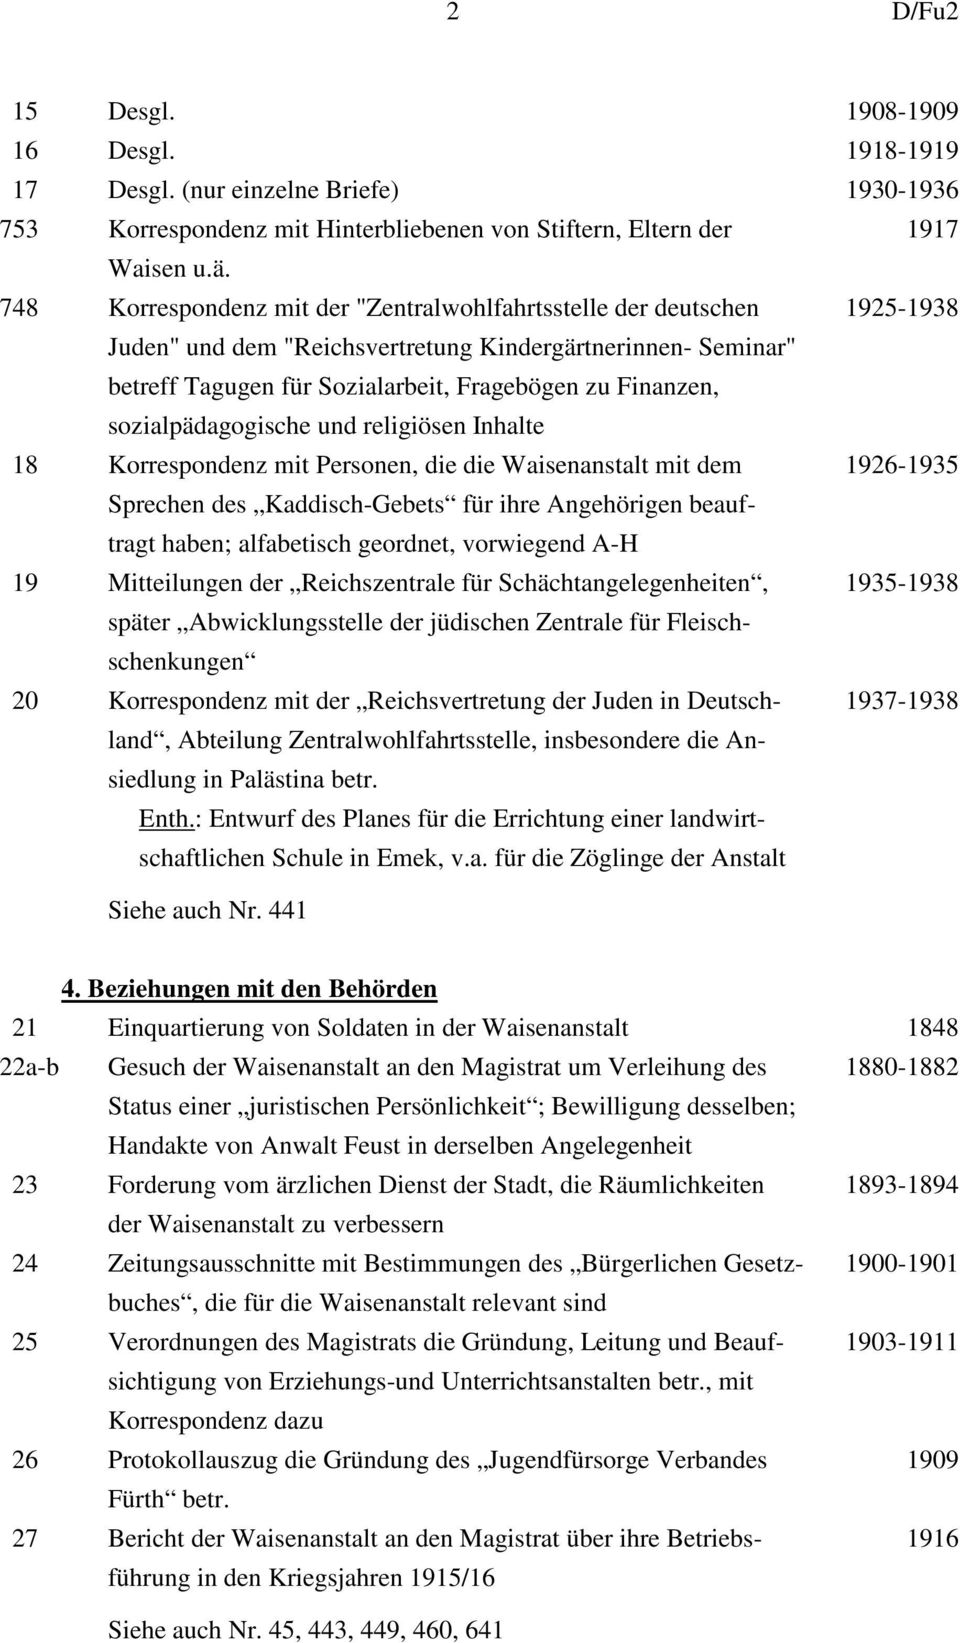 sozialpädagogische und religiösen Inhalte 18 Korrespondenz mit Personen, die die Waisenanstalt mit dem 1926-1935 Sprechen des Kaddisch-Gebets für ihre Angehörigen beauftragt haben; alfabetisch